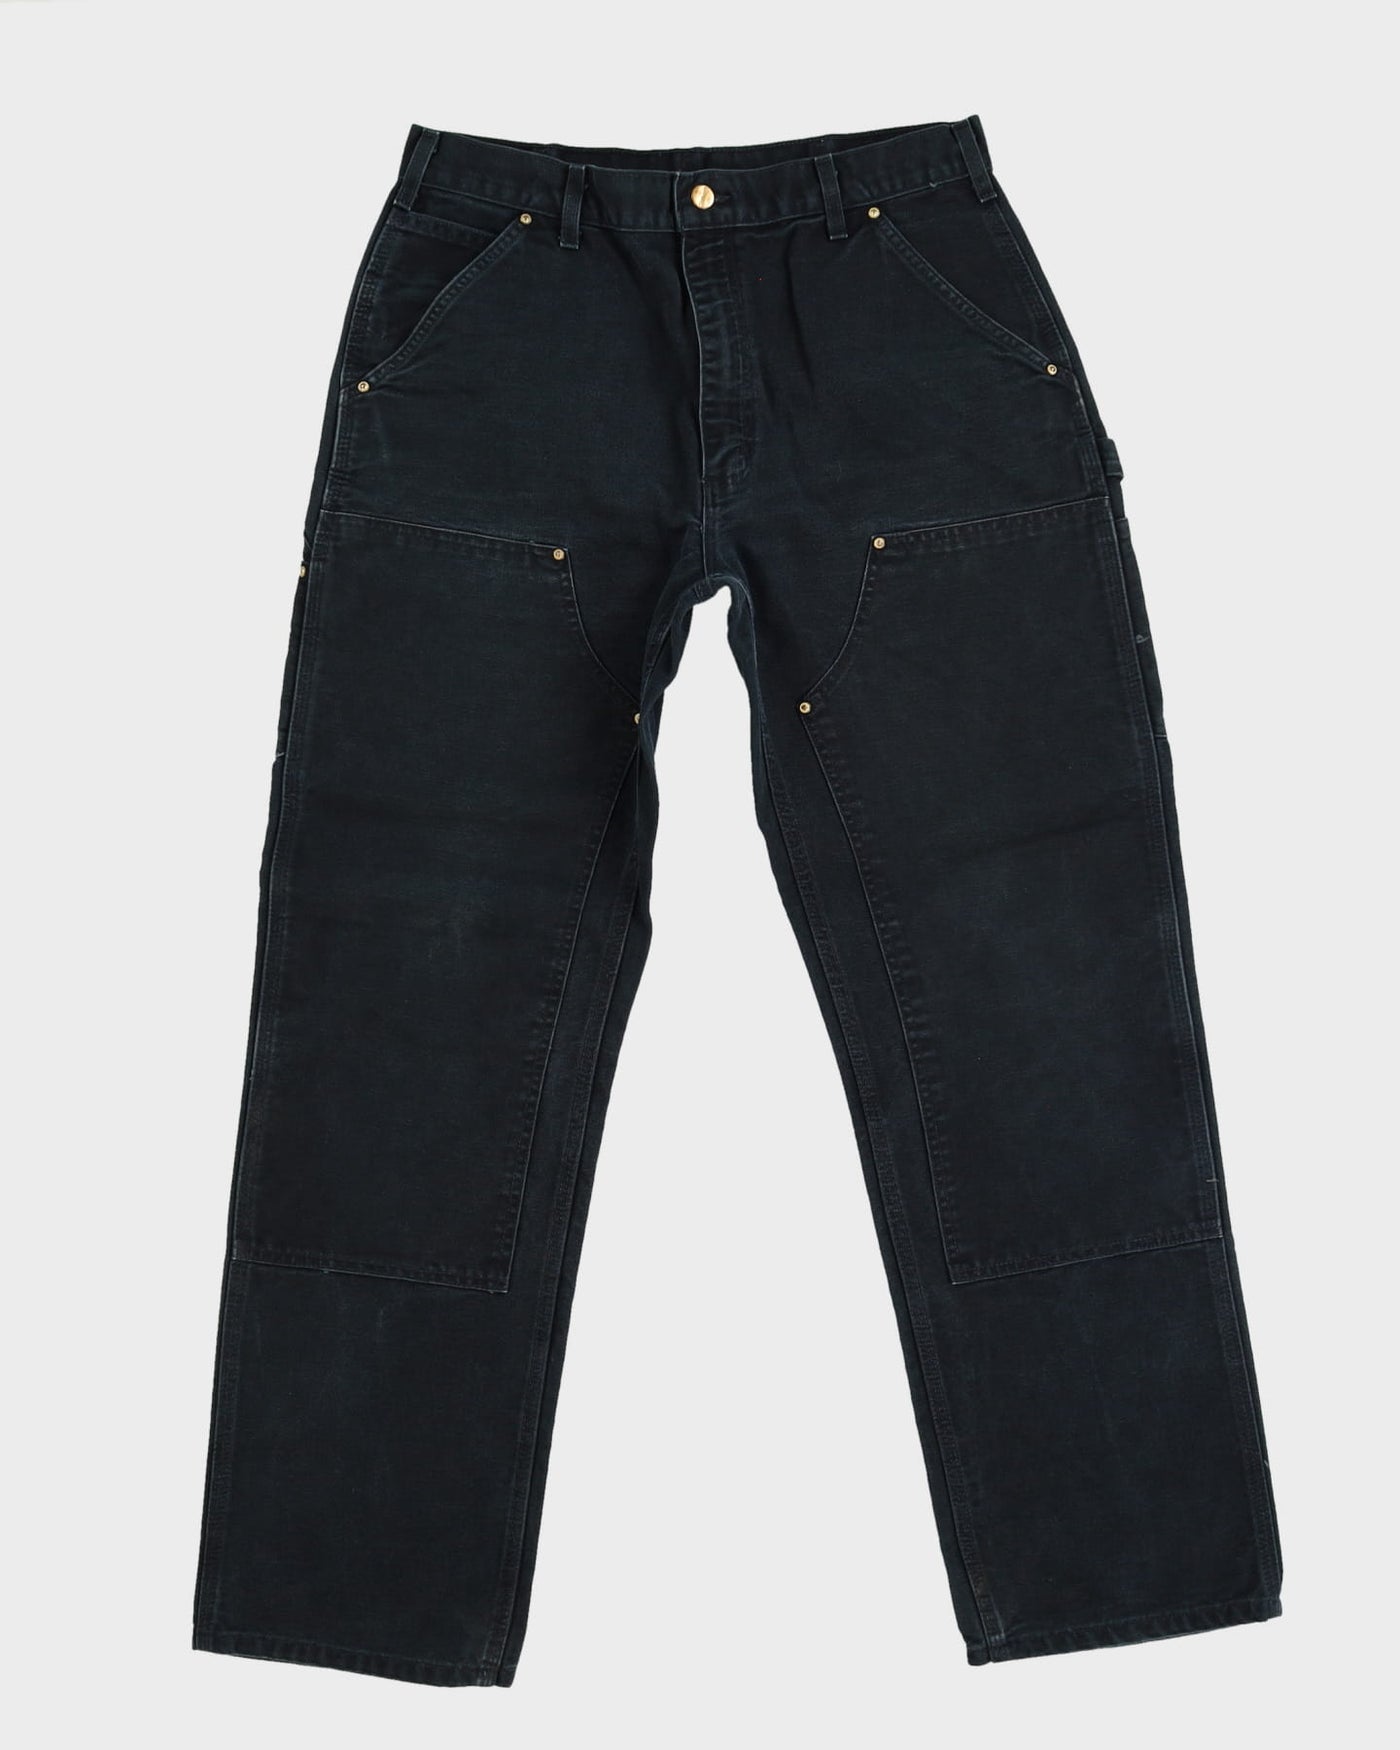 Carhartt Black Double Knee Workwear Jeans - W34 L32